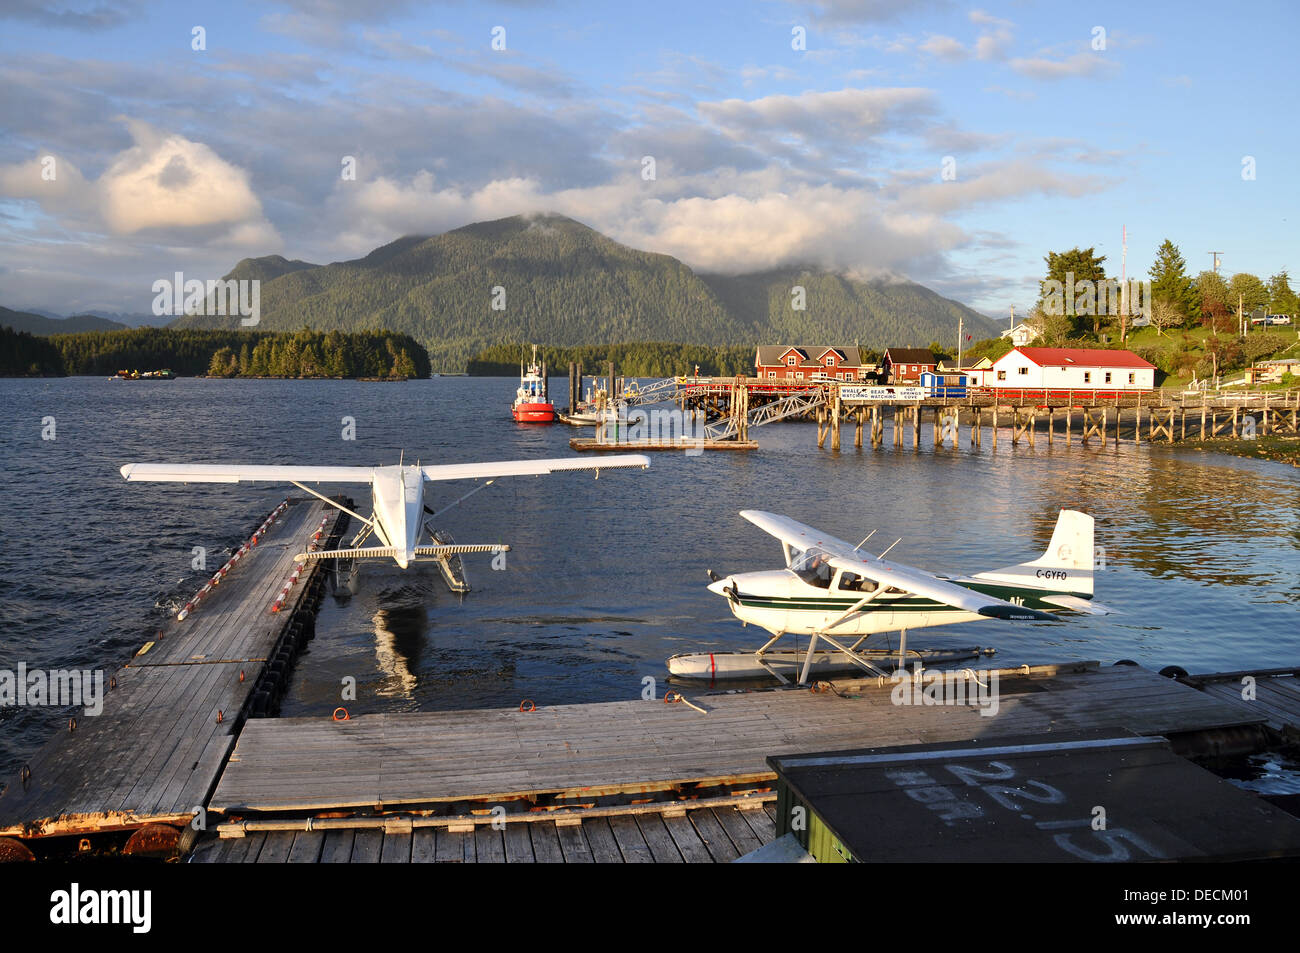 Terminal pour hydravions au quai public, Tofino, Vancouver Island, BC, Canada Banque D'Images